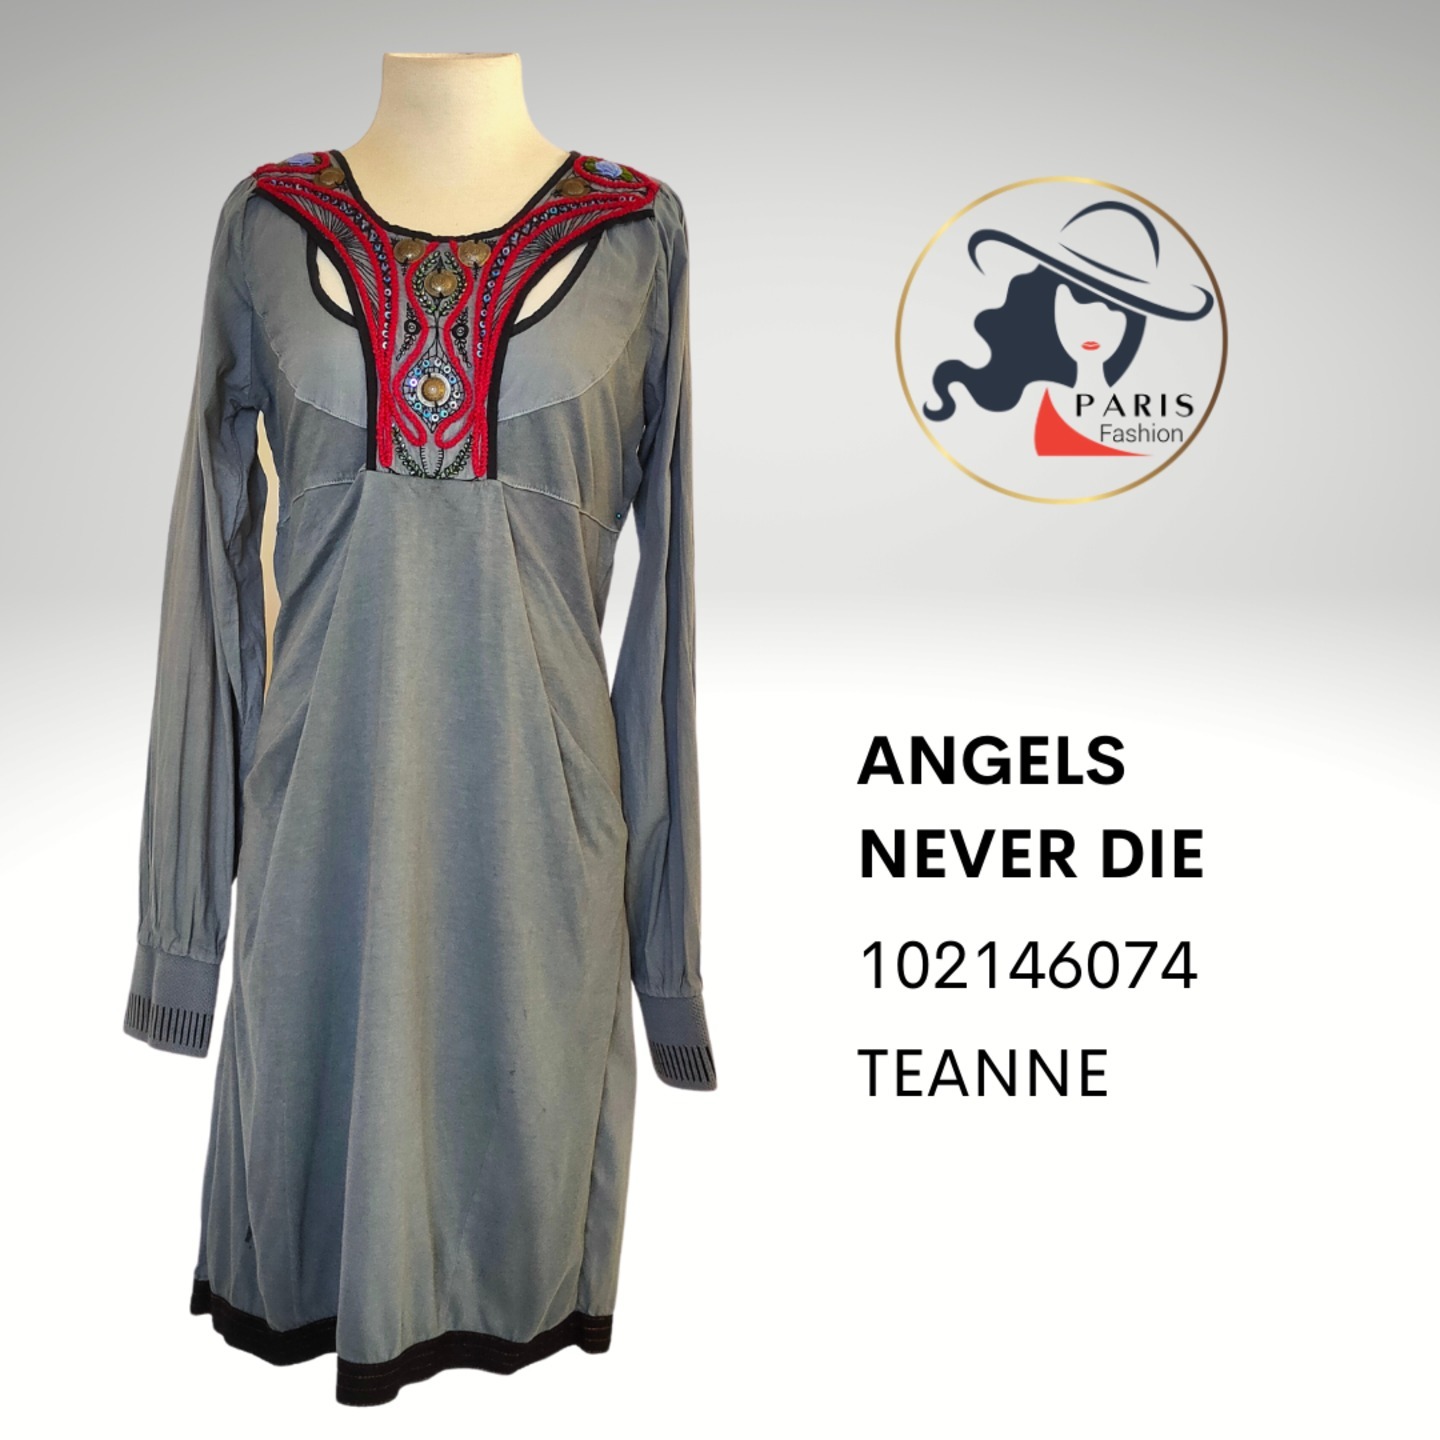 ANGELS NEVER DIE 102146074 TEANNE DRESS